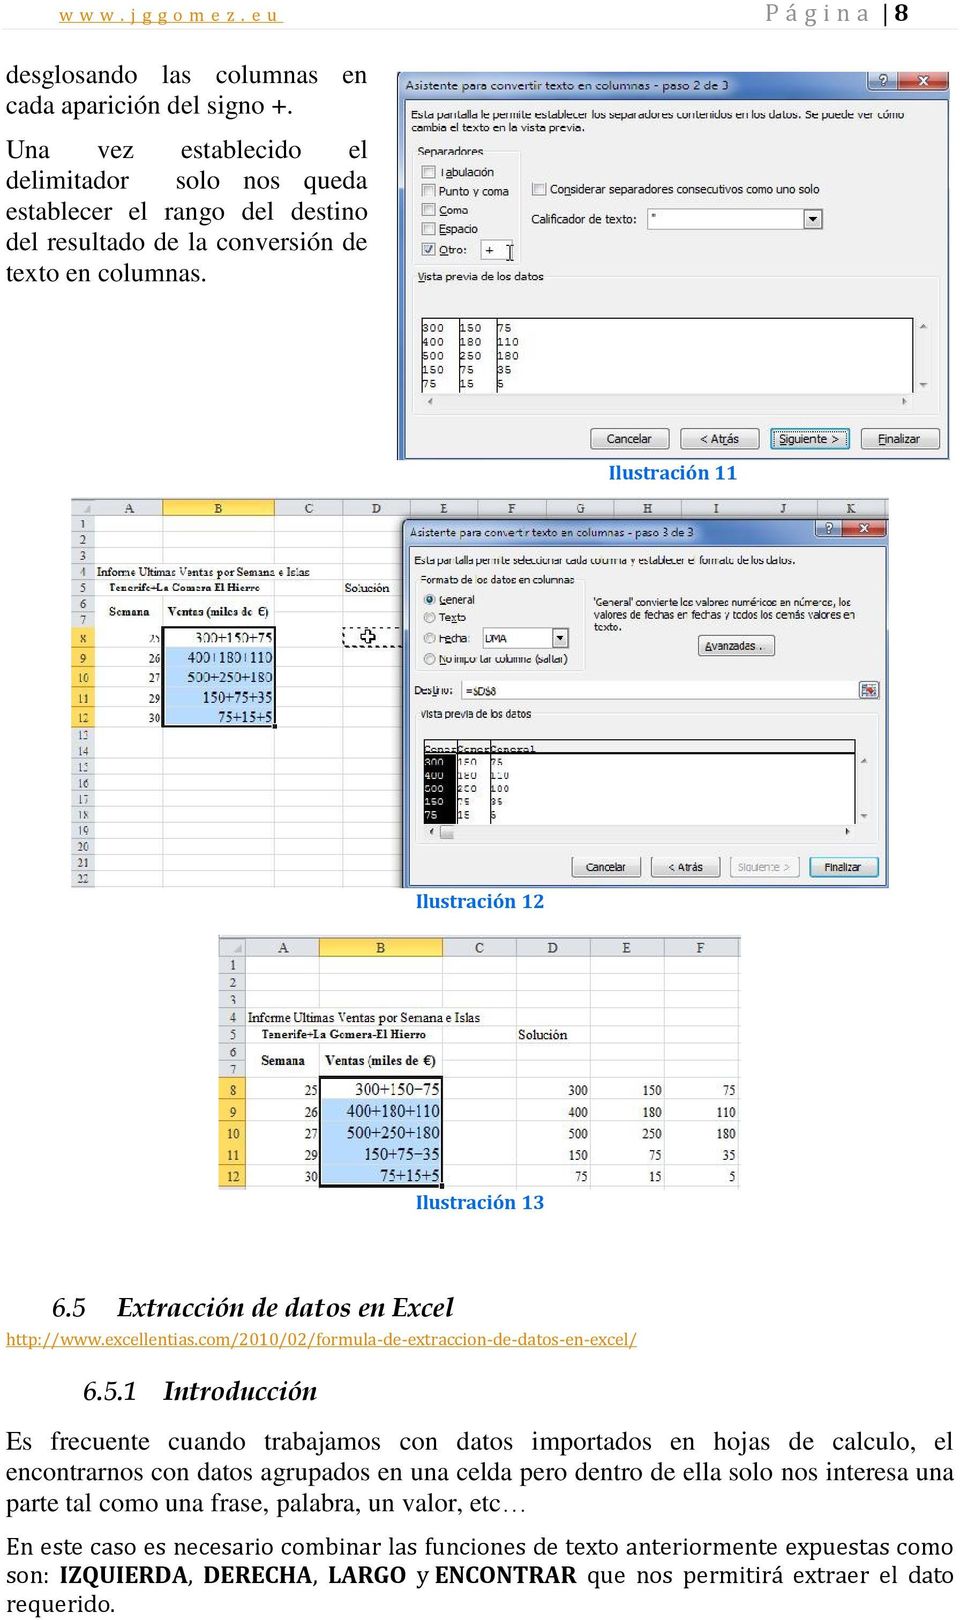 5 Extracción de datos en Excel http://www.excellentias.com/2010/02/formula-de-extraccion-de-datos-en-excel/ 6.5.1 Introducción Es frecuente cuando trabajamos con datos importados en hojas de